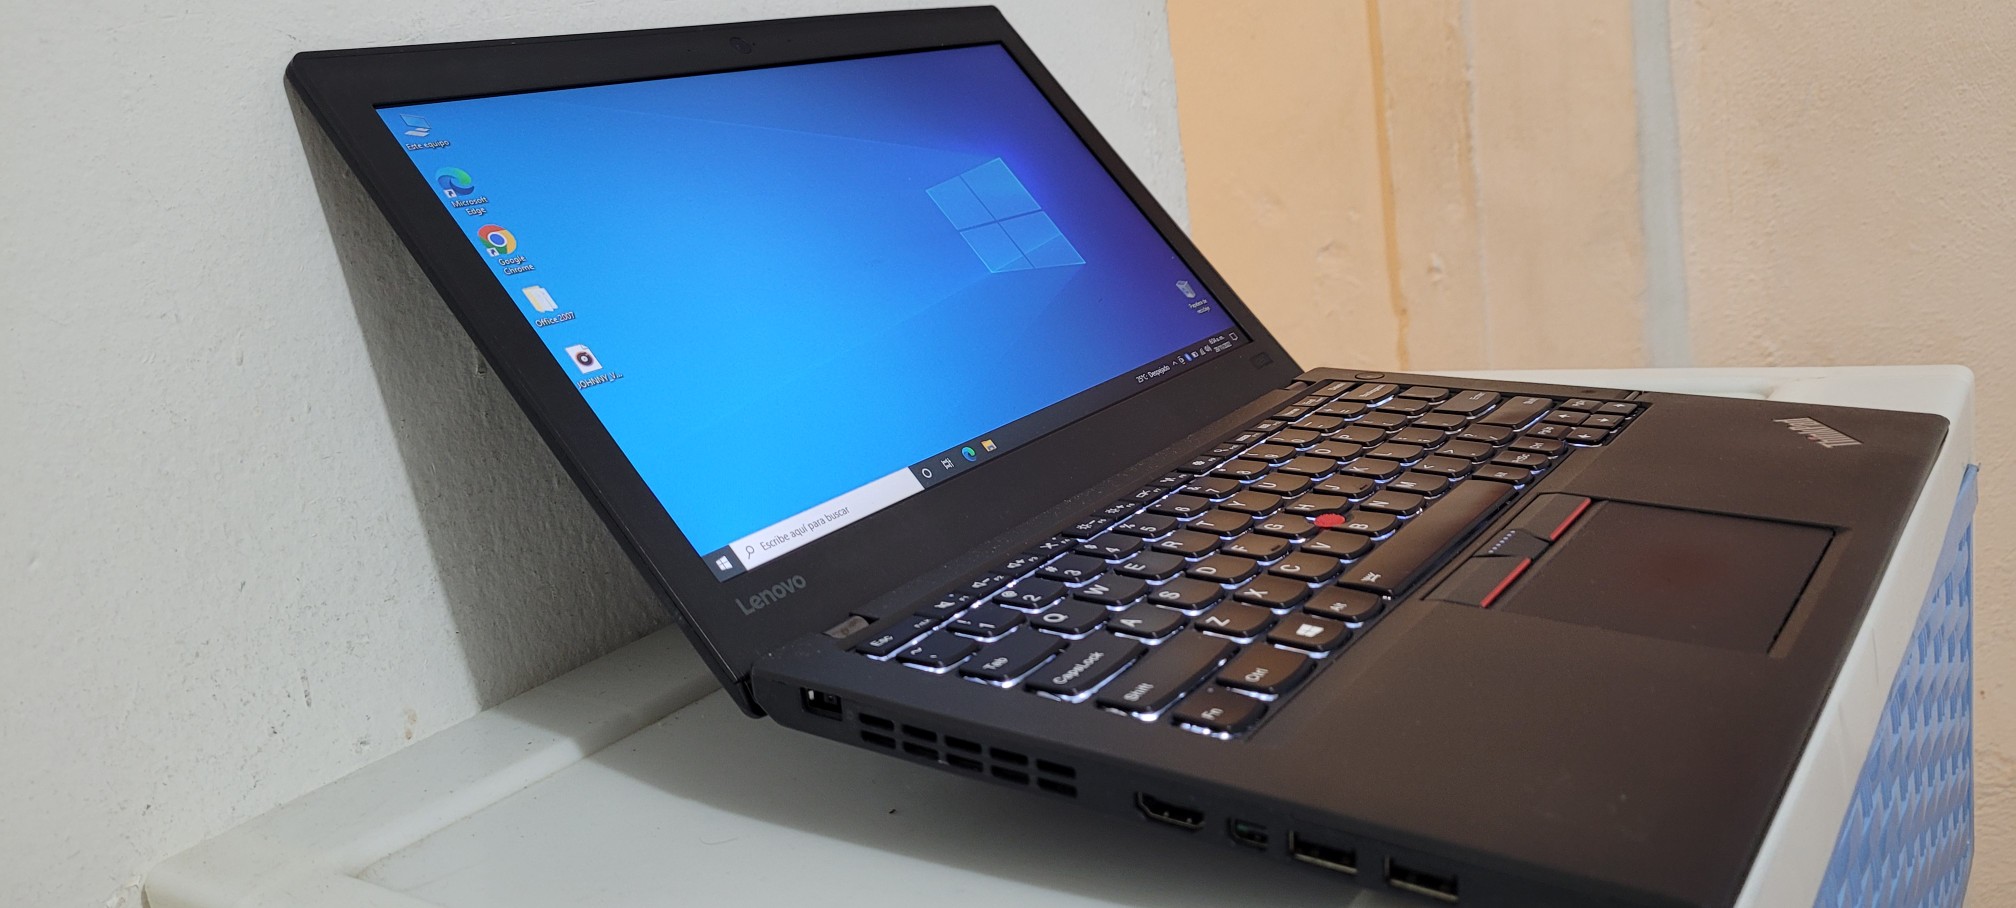 computadoras y laptops - Lenovo ThinKpaD t450 14 Pulg Core i5 Ram 16gb Disco 128gb SSD Wifi 1